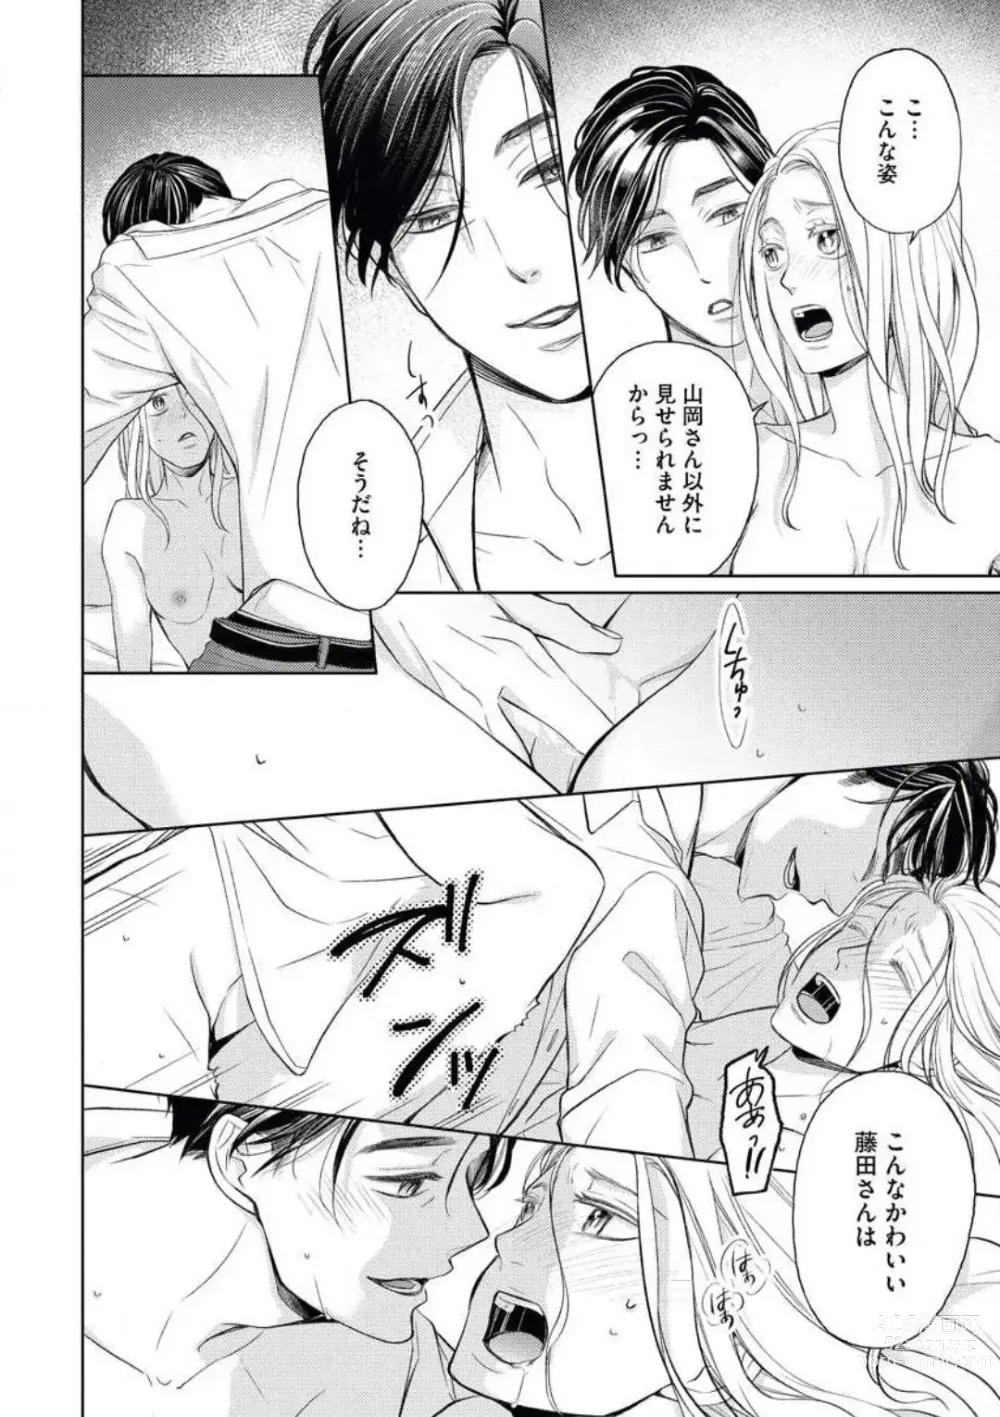 Page 30 of manga Mitsu Koi Maisonette